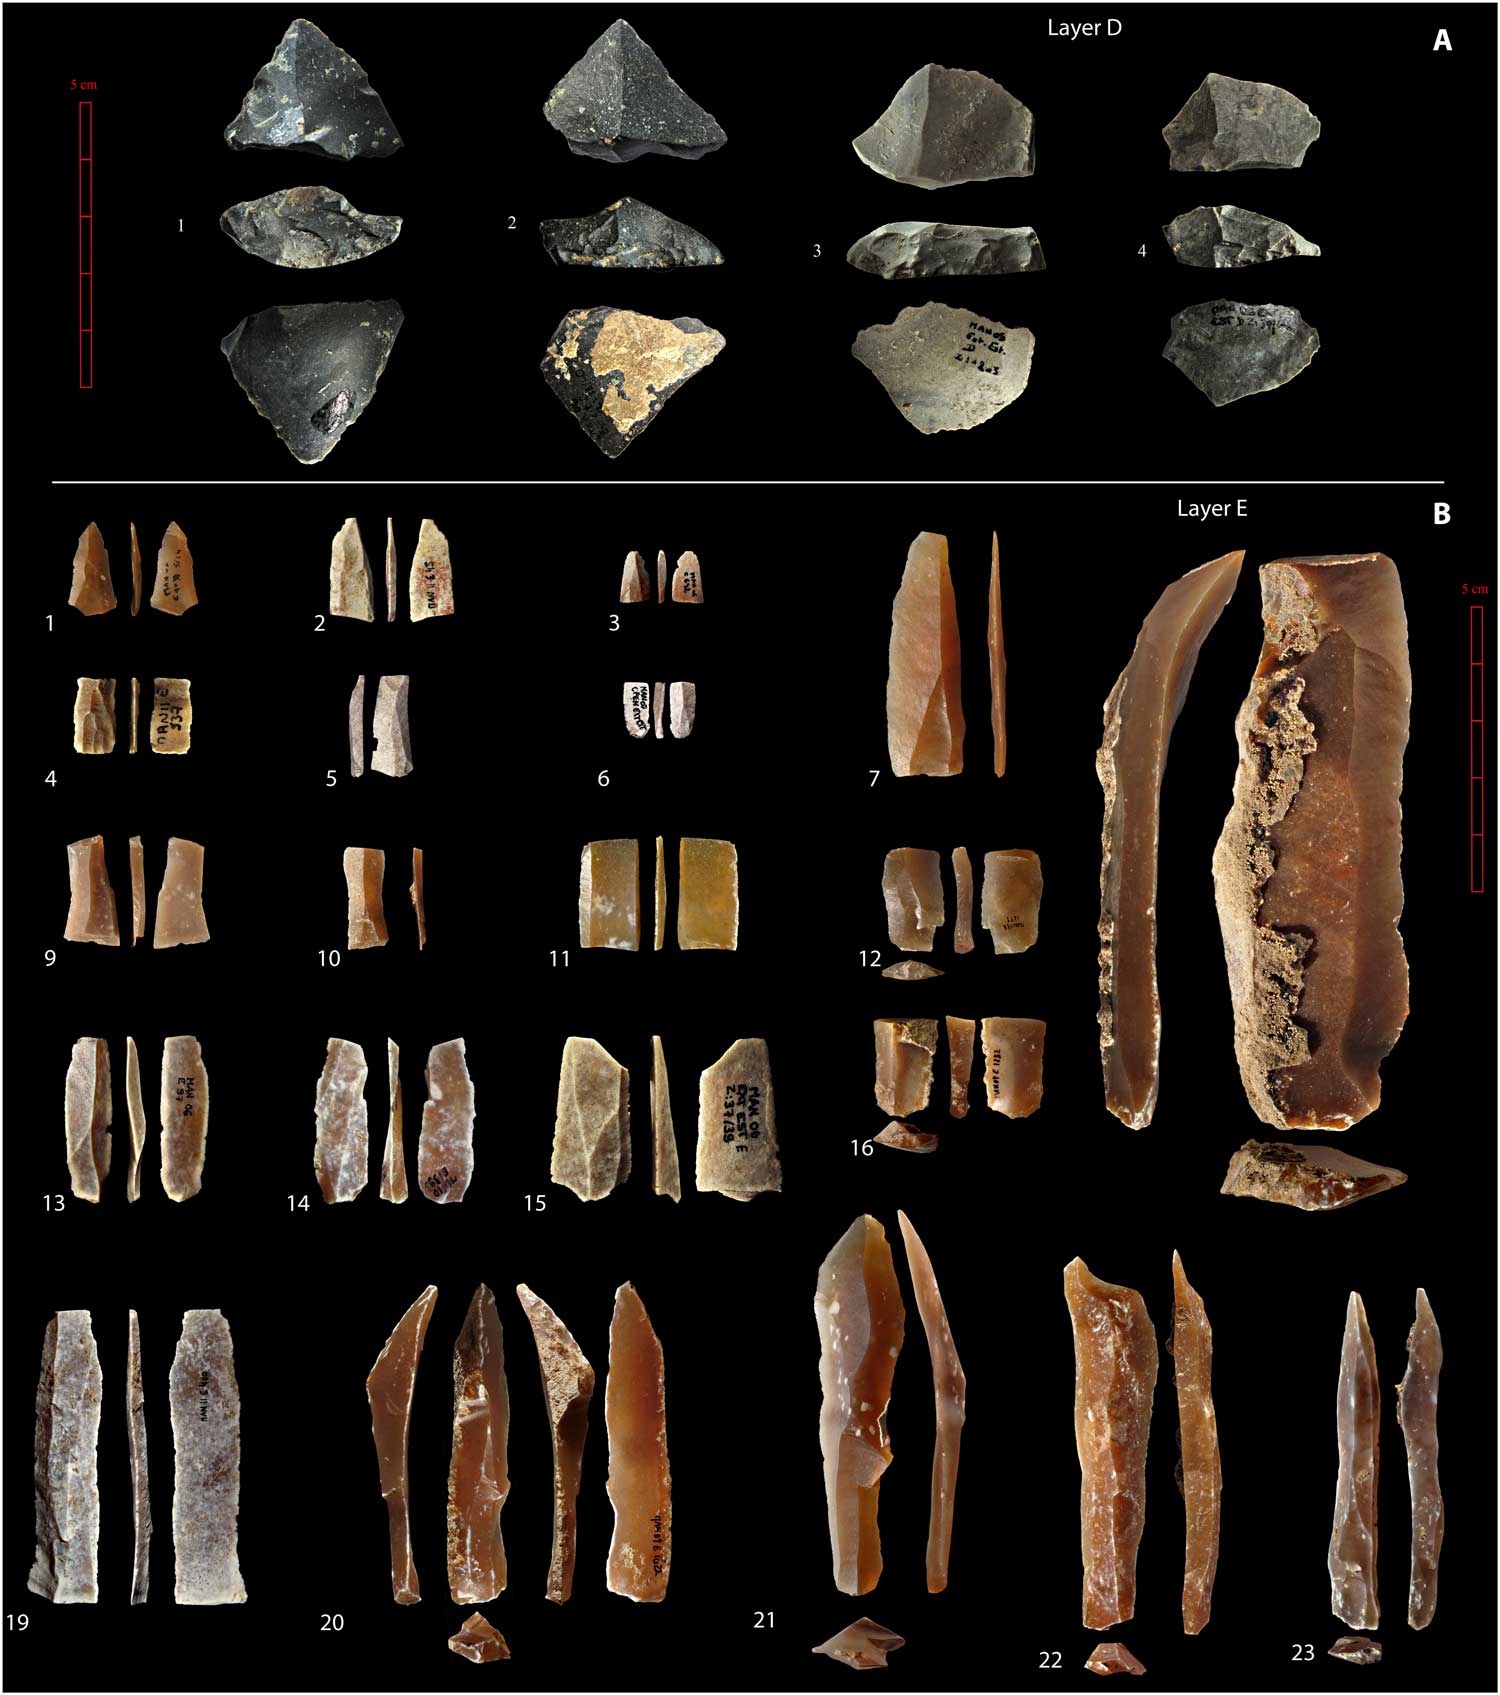 أغرب الاكتشافات التي قام بها علماء الآثار في التاريخ البشري
مصر القديمة الهند 